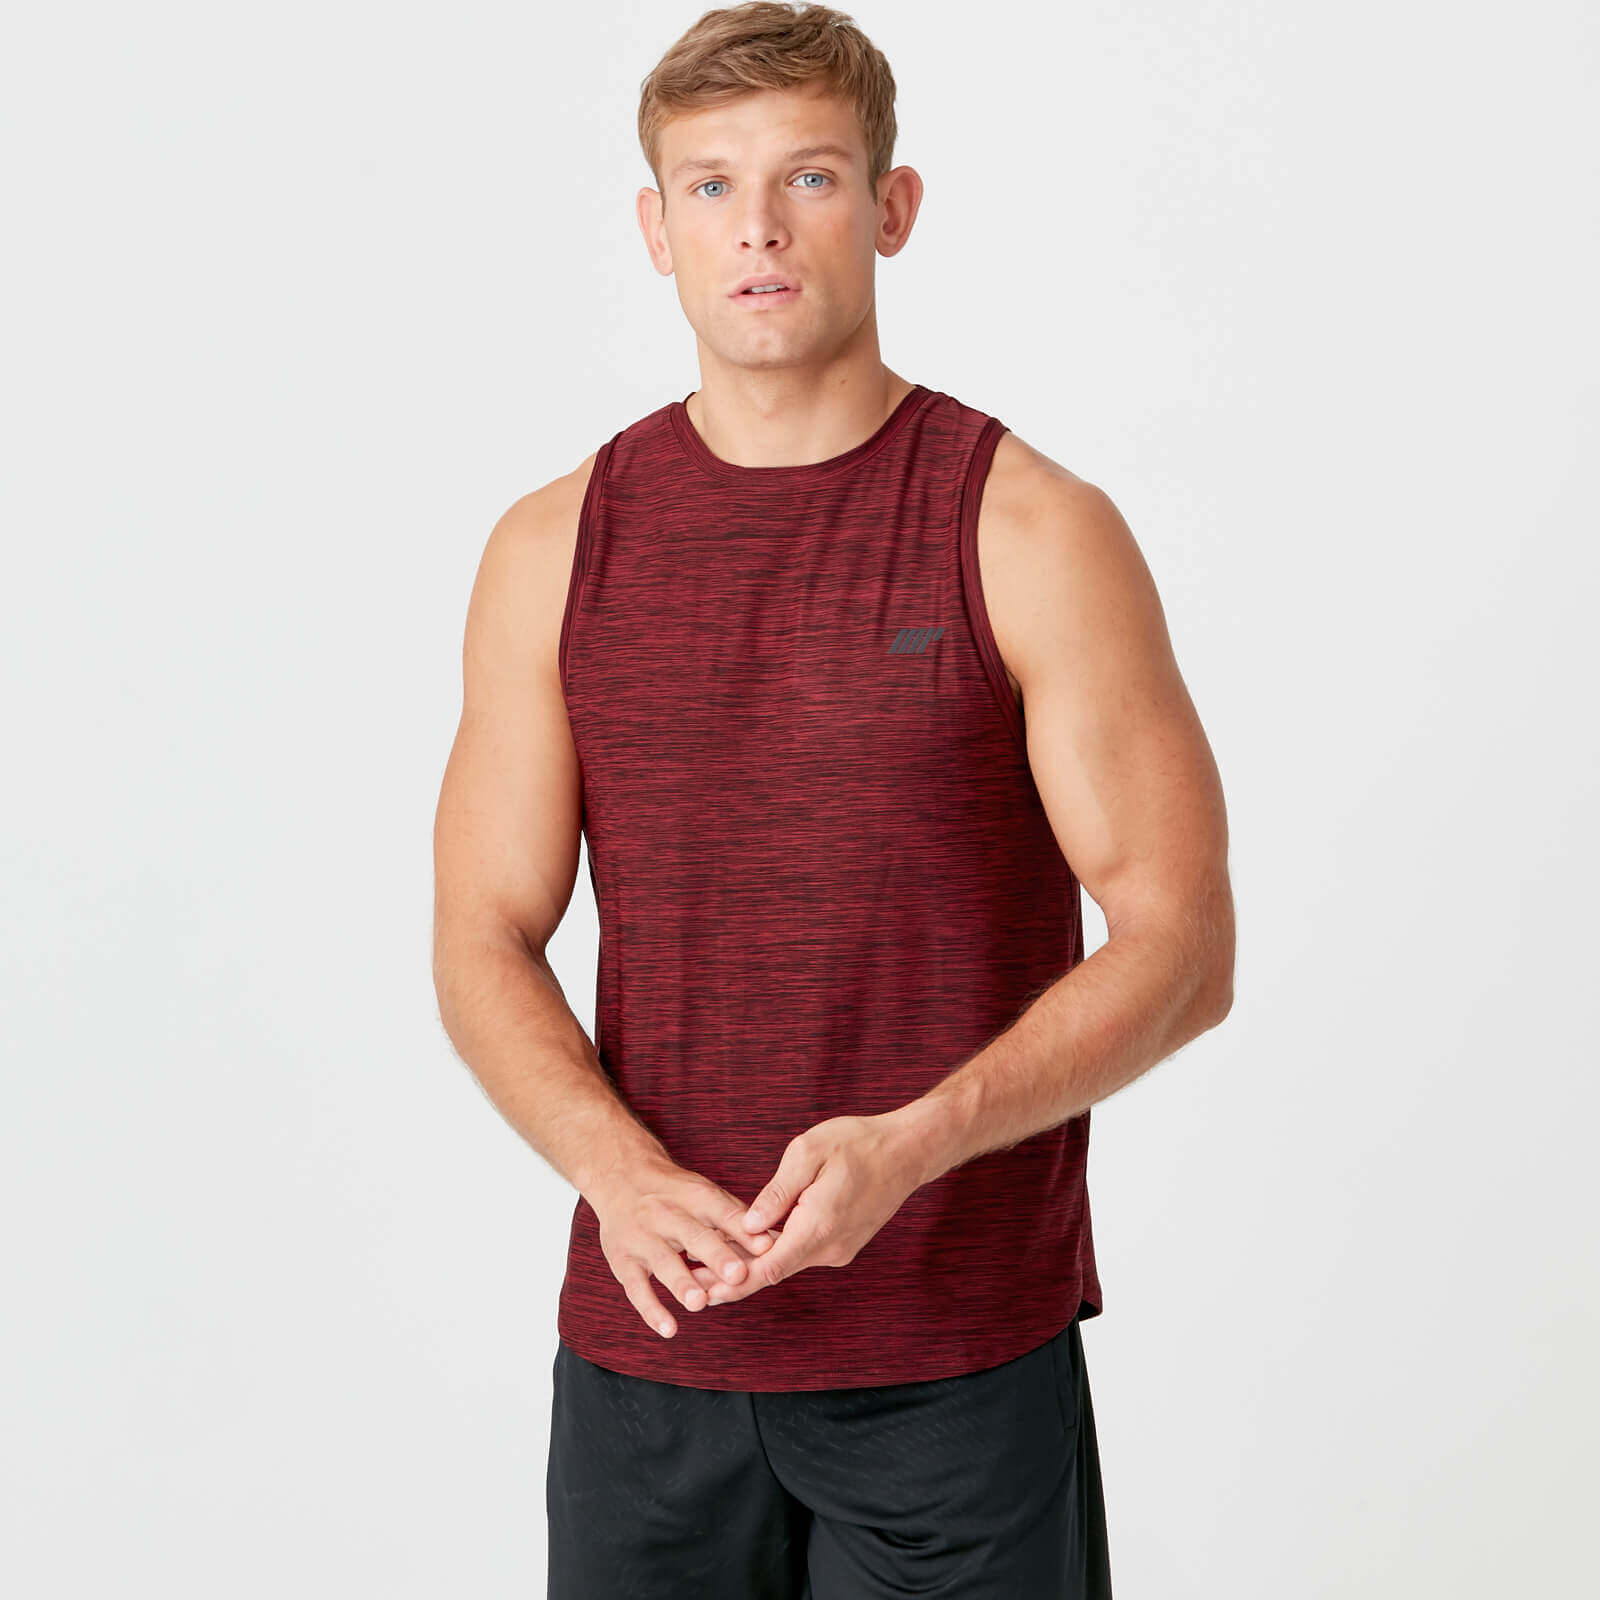 Dry-Tech Infinity majica bez rukava - Crvena - XL